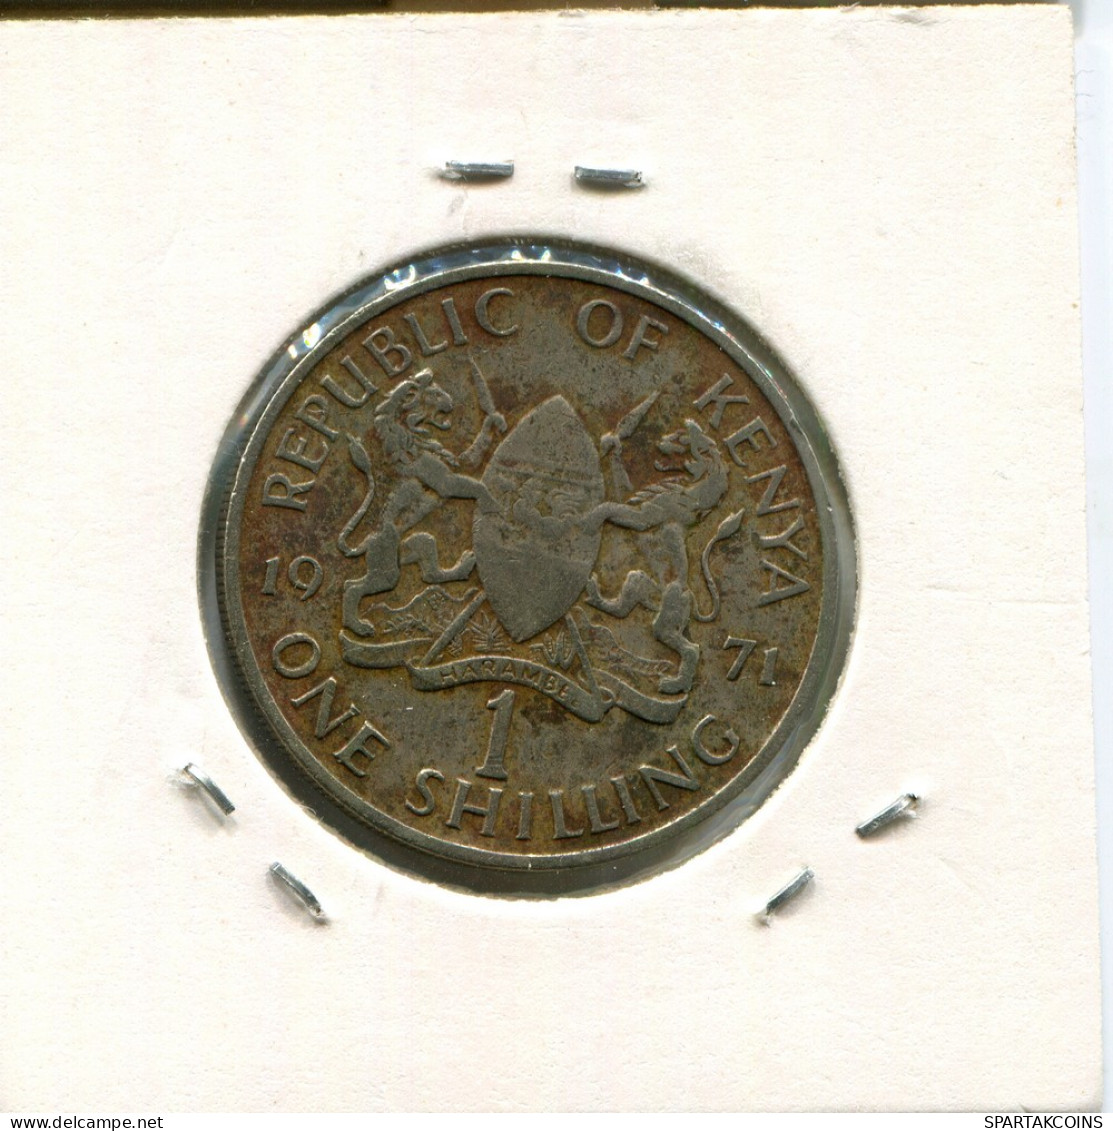 1 SHILLING 1971 KENYA Coin #AN745.U - Kenya